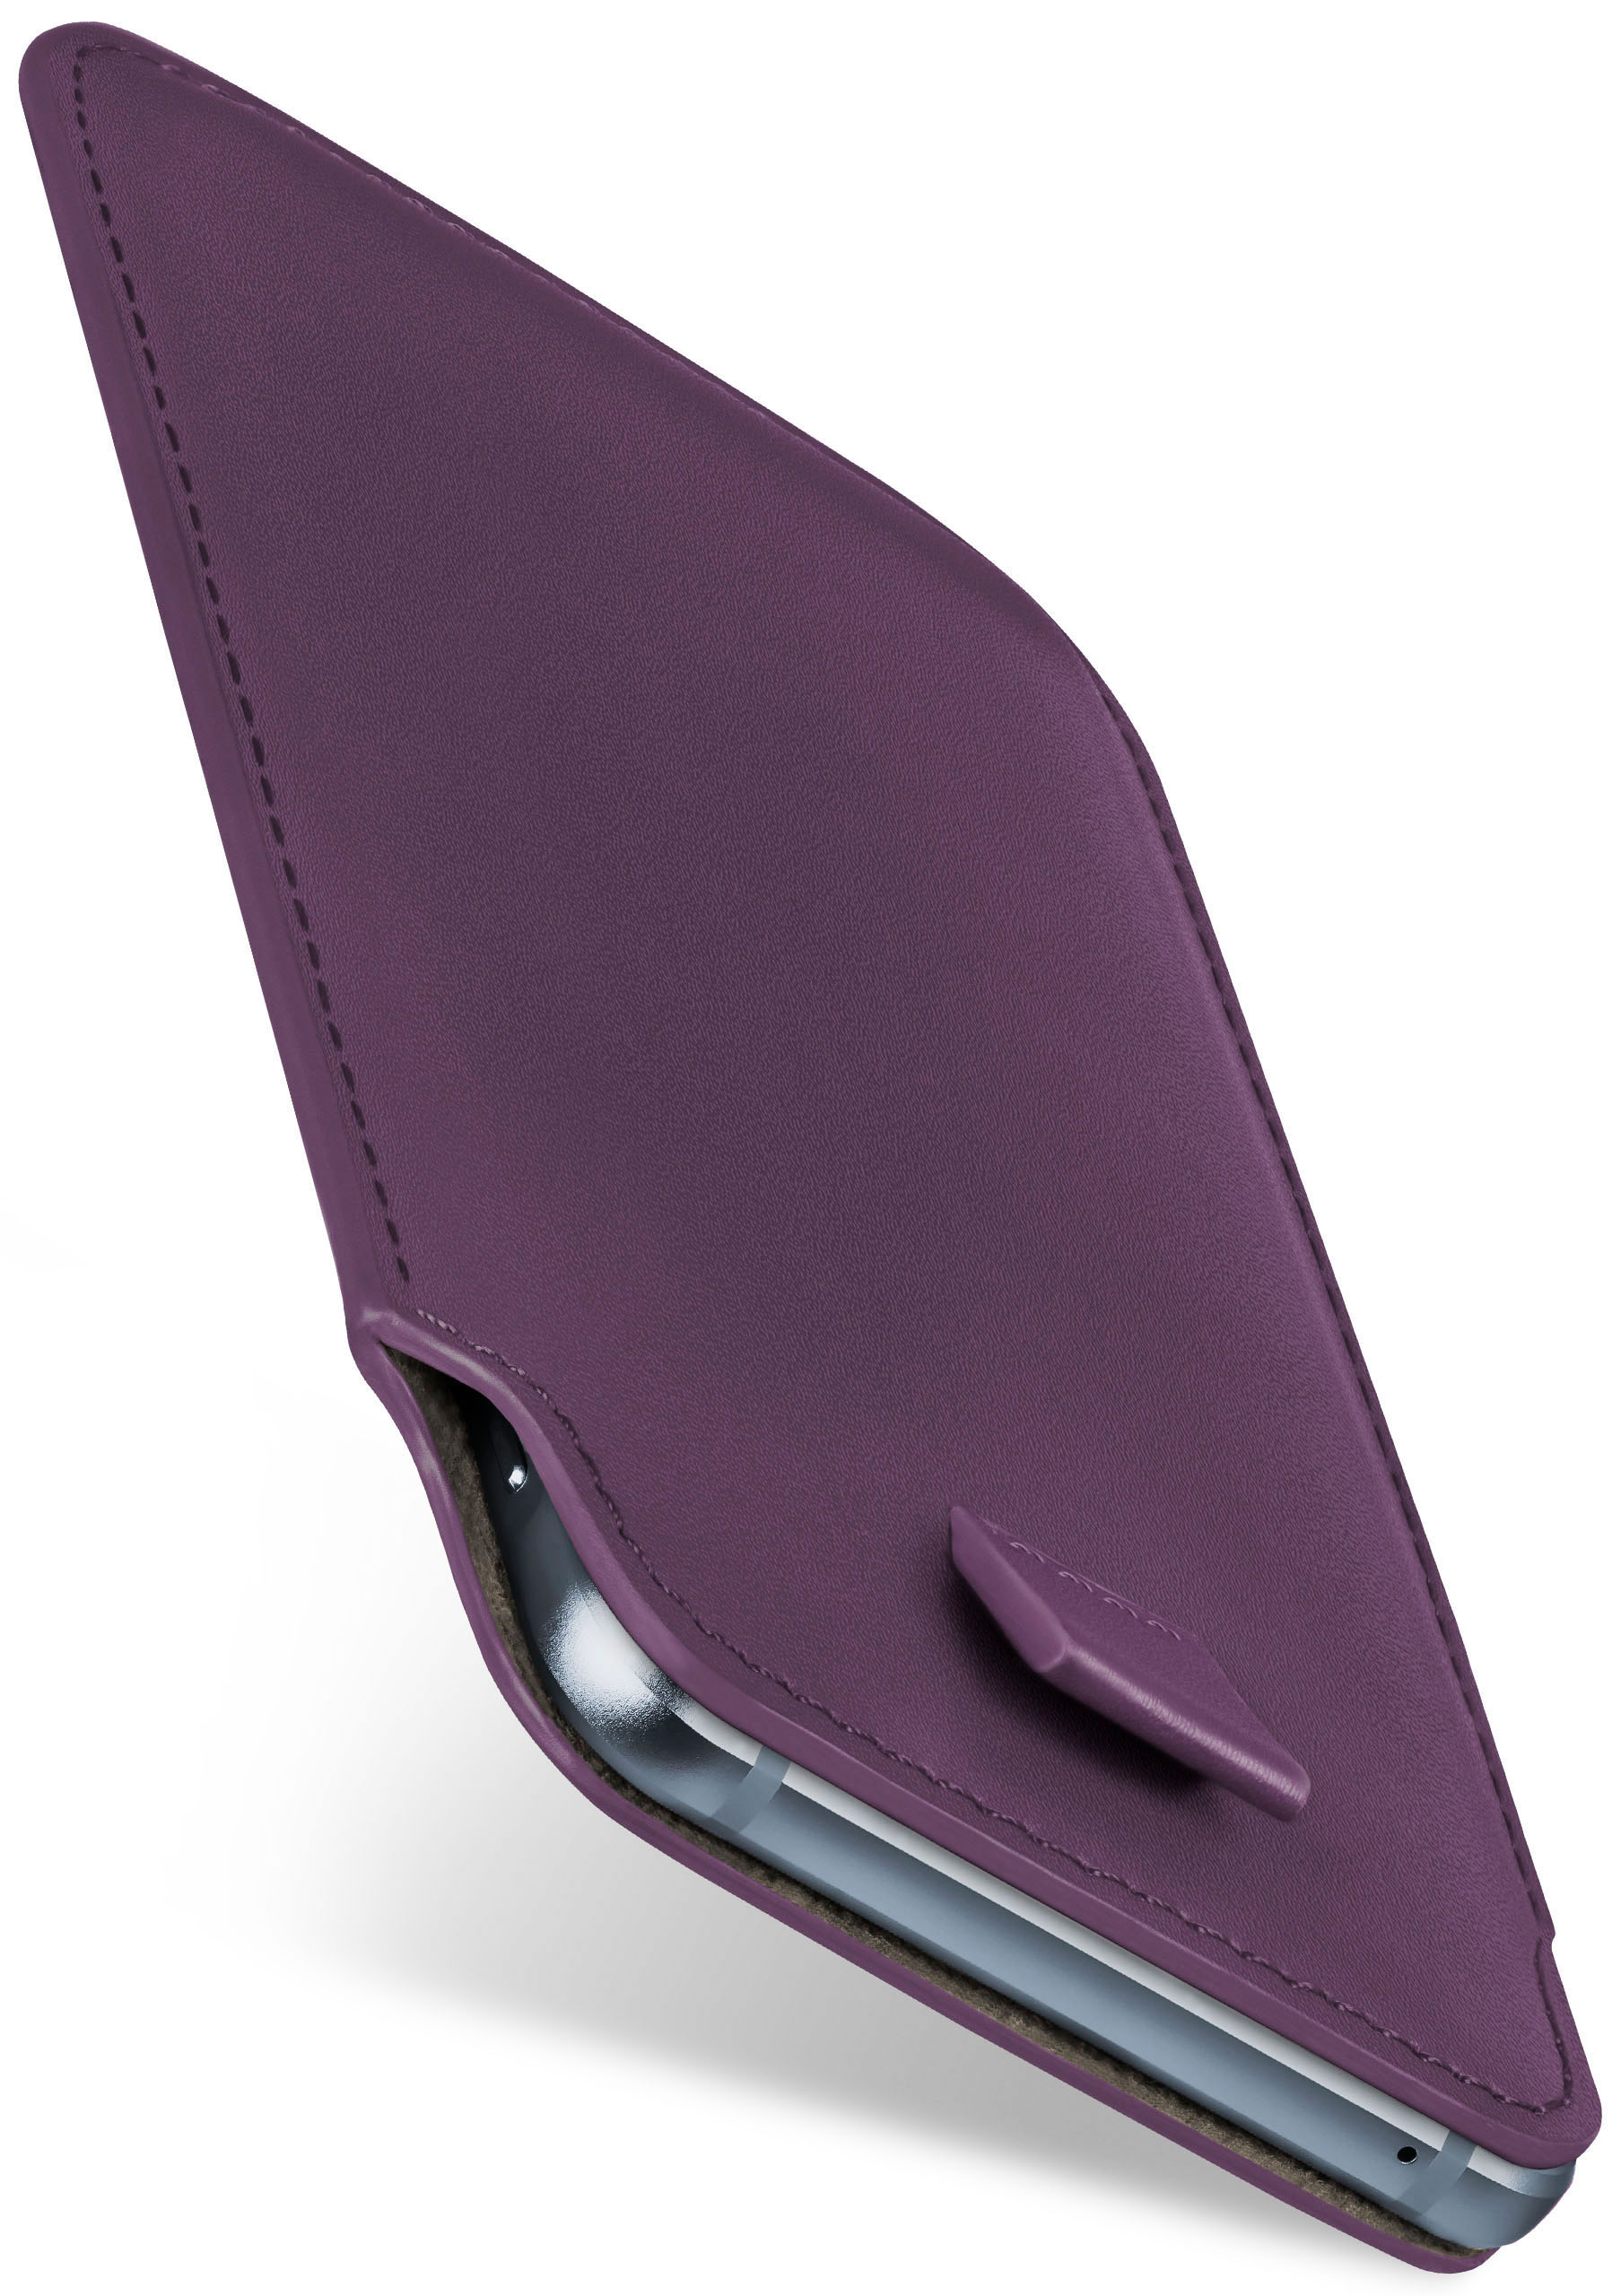 Slide Full Case, Emporia, Cover, Basic, MOEX Indigo-Violet Flip